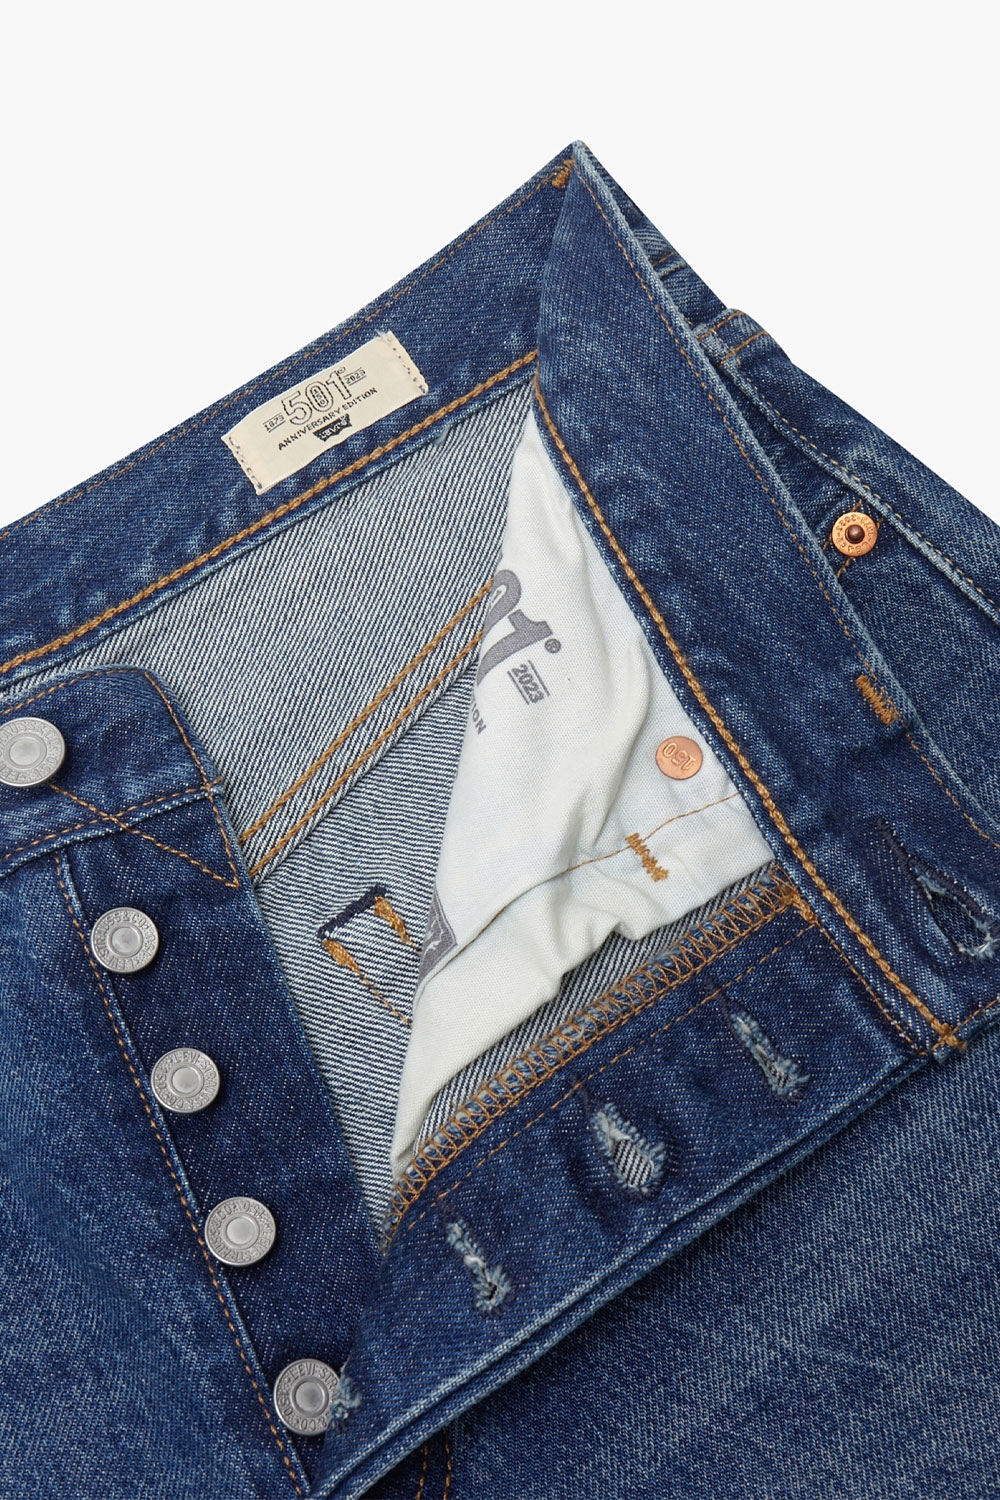 jeans 501 original azul denim